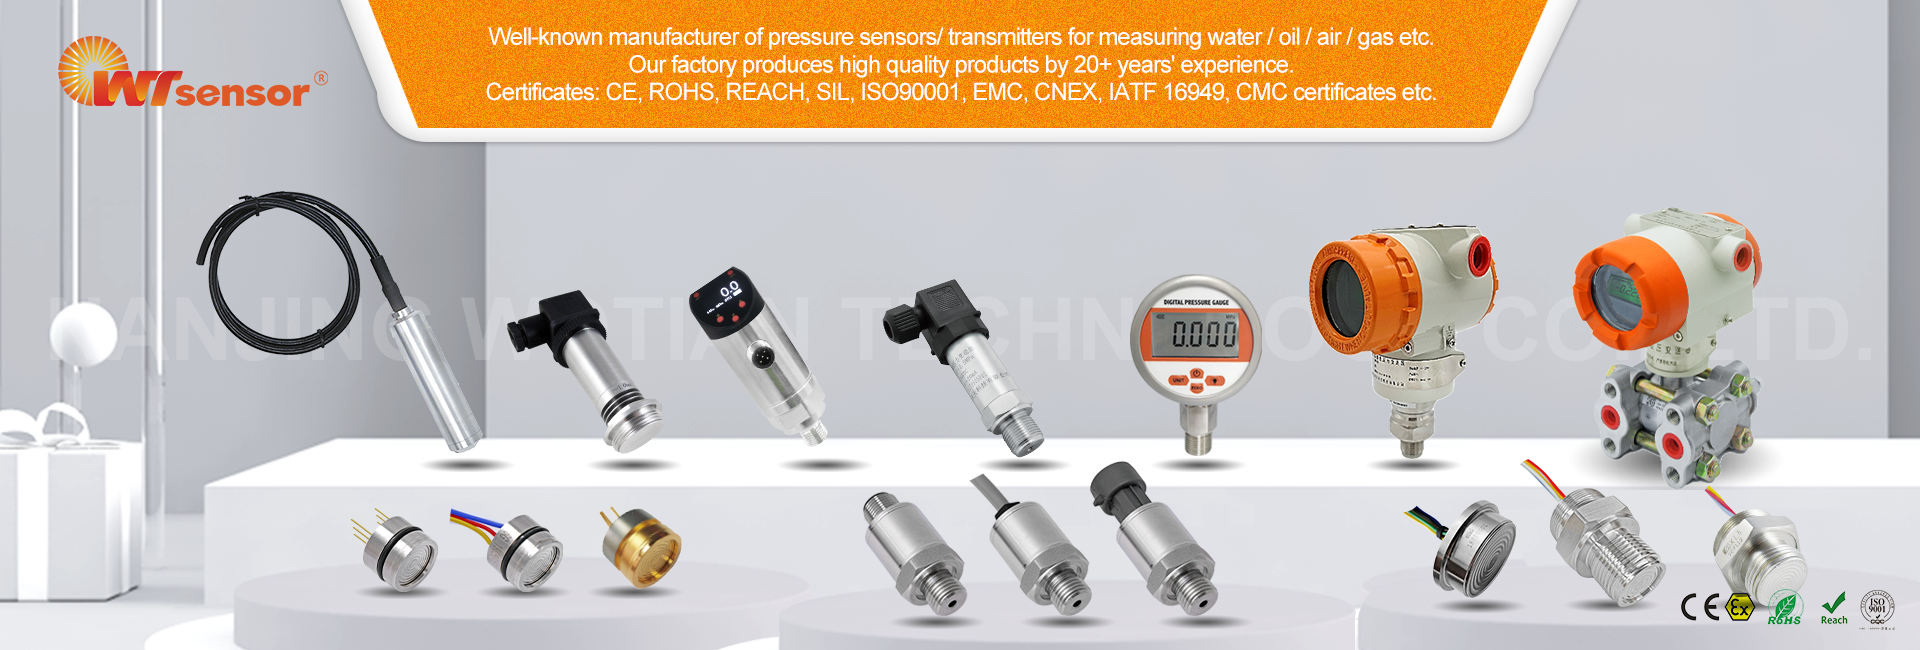 Pressure Sensor Manufacturer